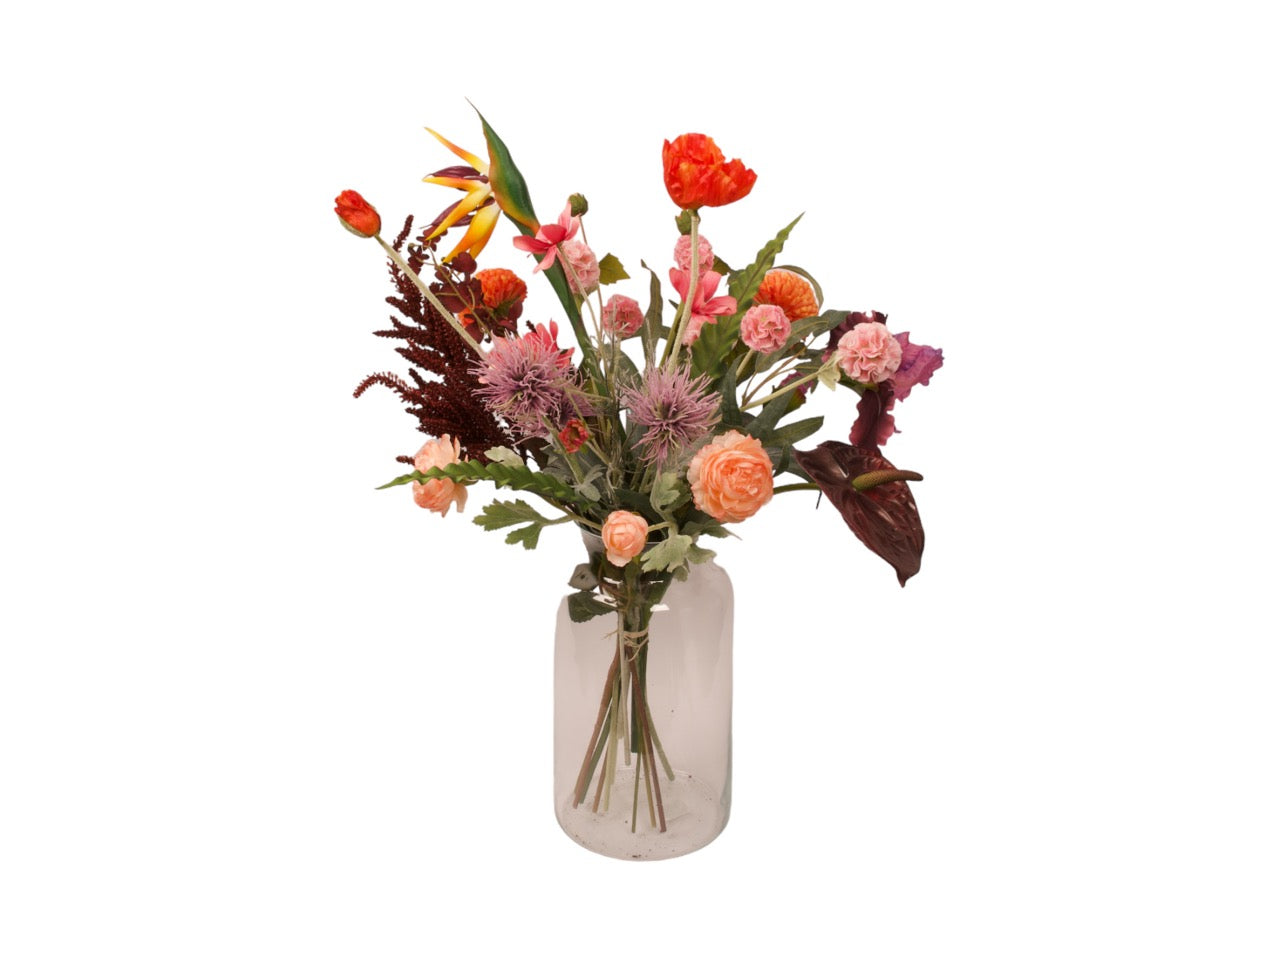 Boeket kunstbloemen op vaas in diverse rood/paars/oranje kleuren met groene accenten. veldboeket heeft een hoogte van 70cm